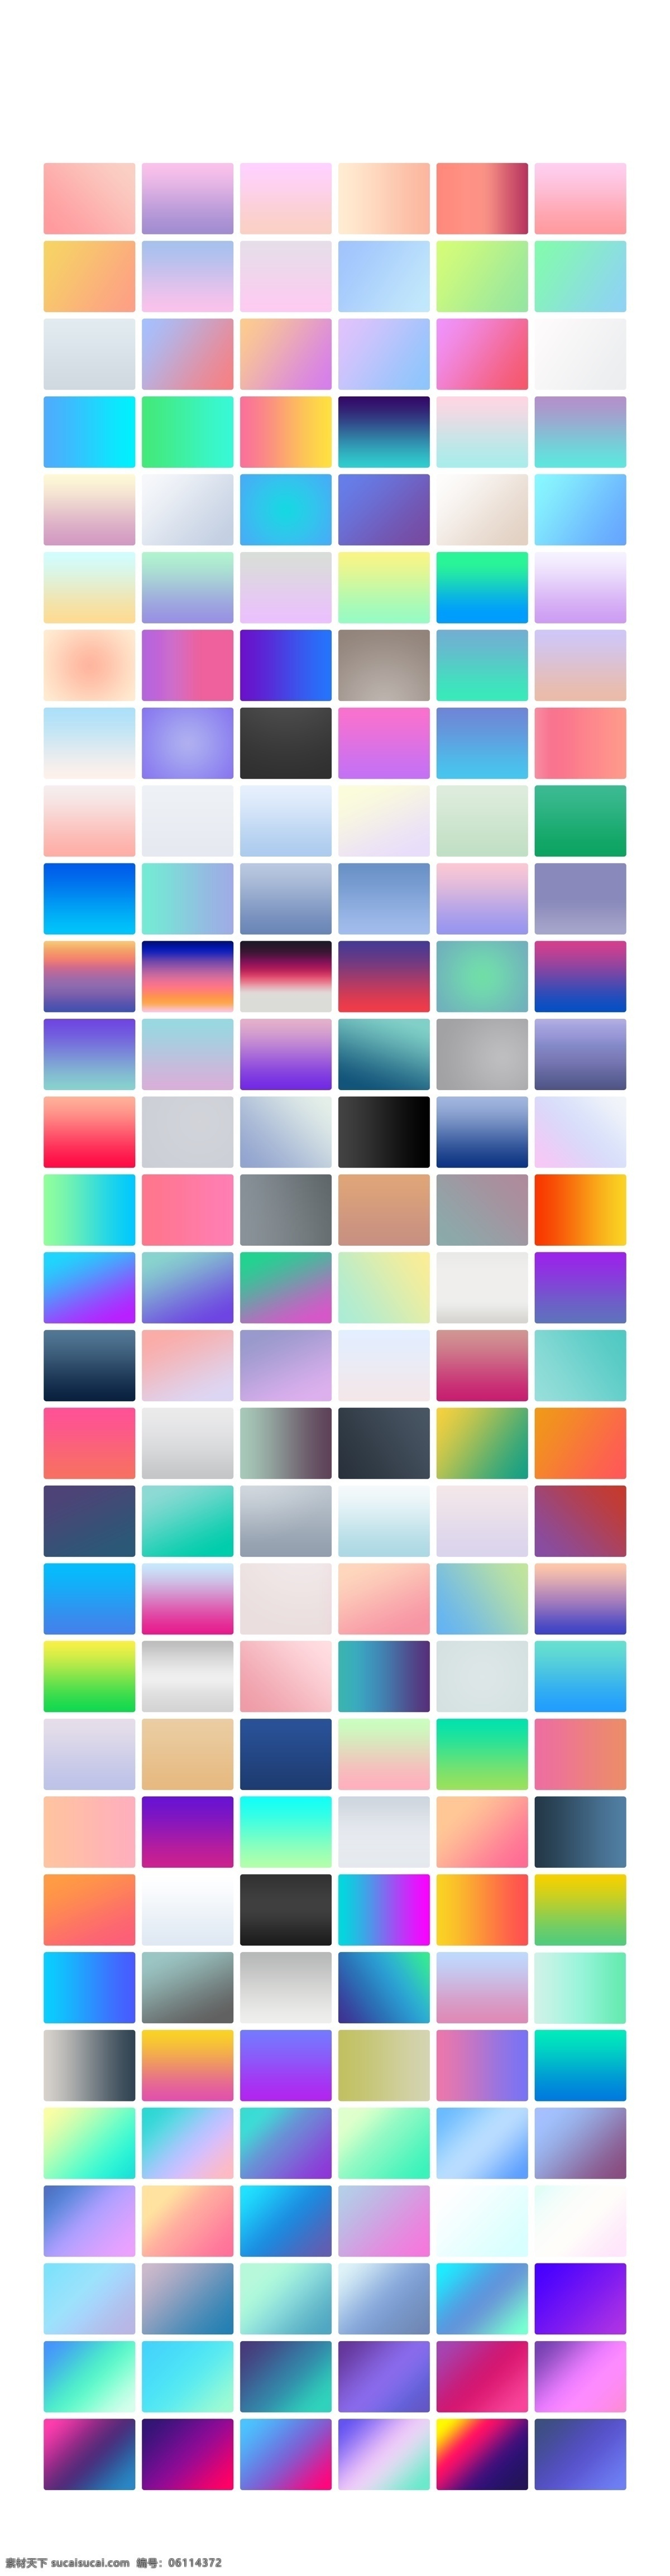 多种配色渐变 多种配色 渐变 色彩搭配 各种元素 色彩混搭